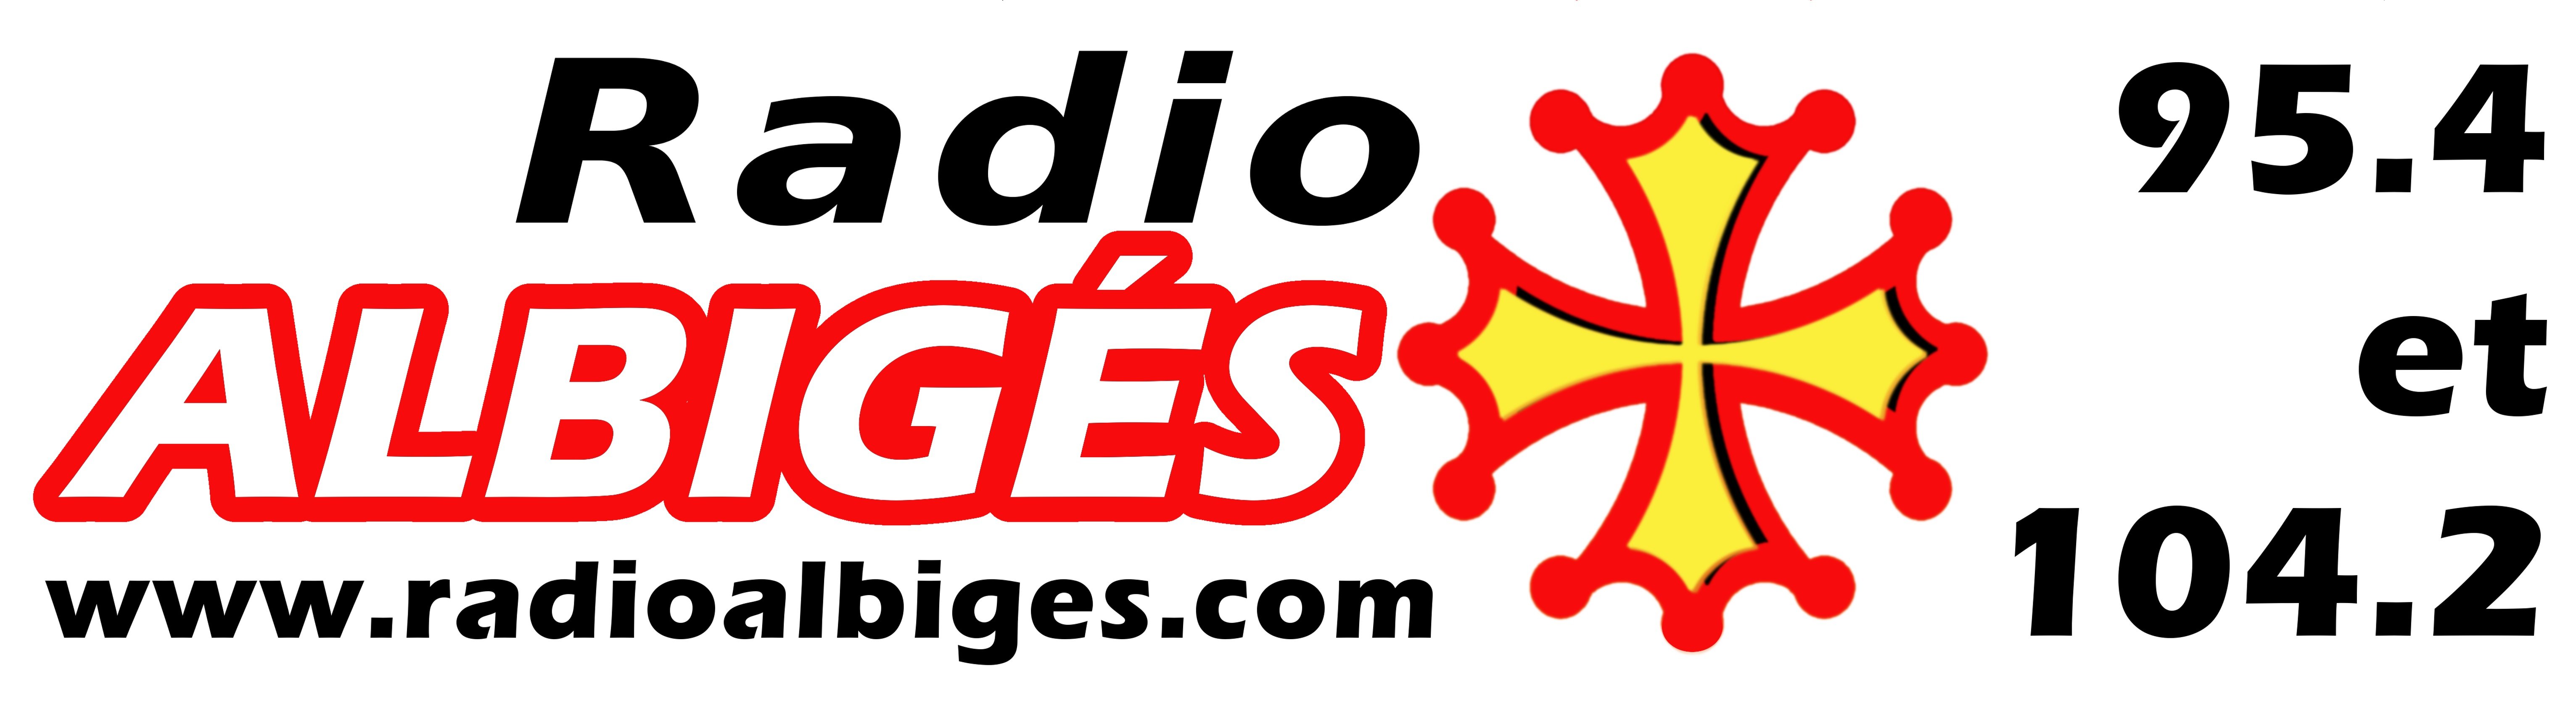 logo-albiges-2015